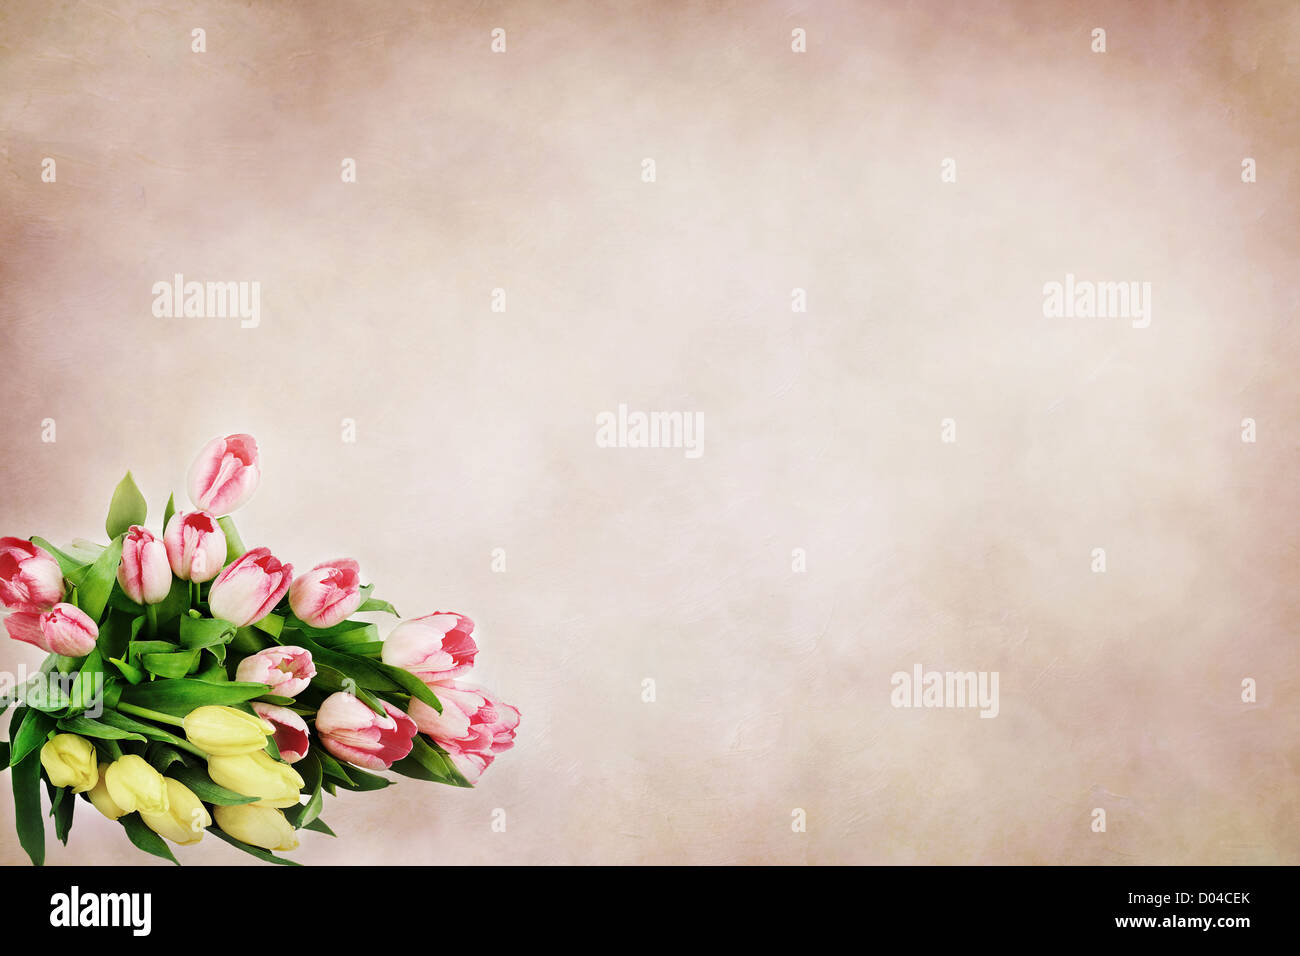 Bellissimi i tulipani contro un sfondo morbido con una stanza per il testo Foto Stock